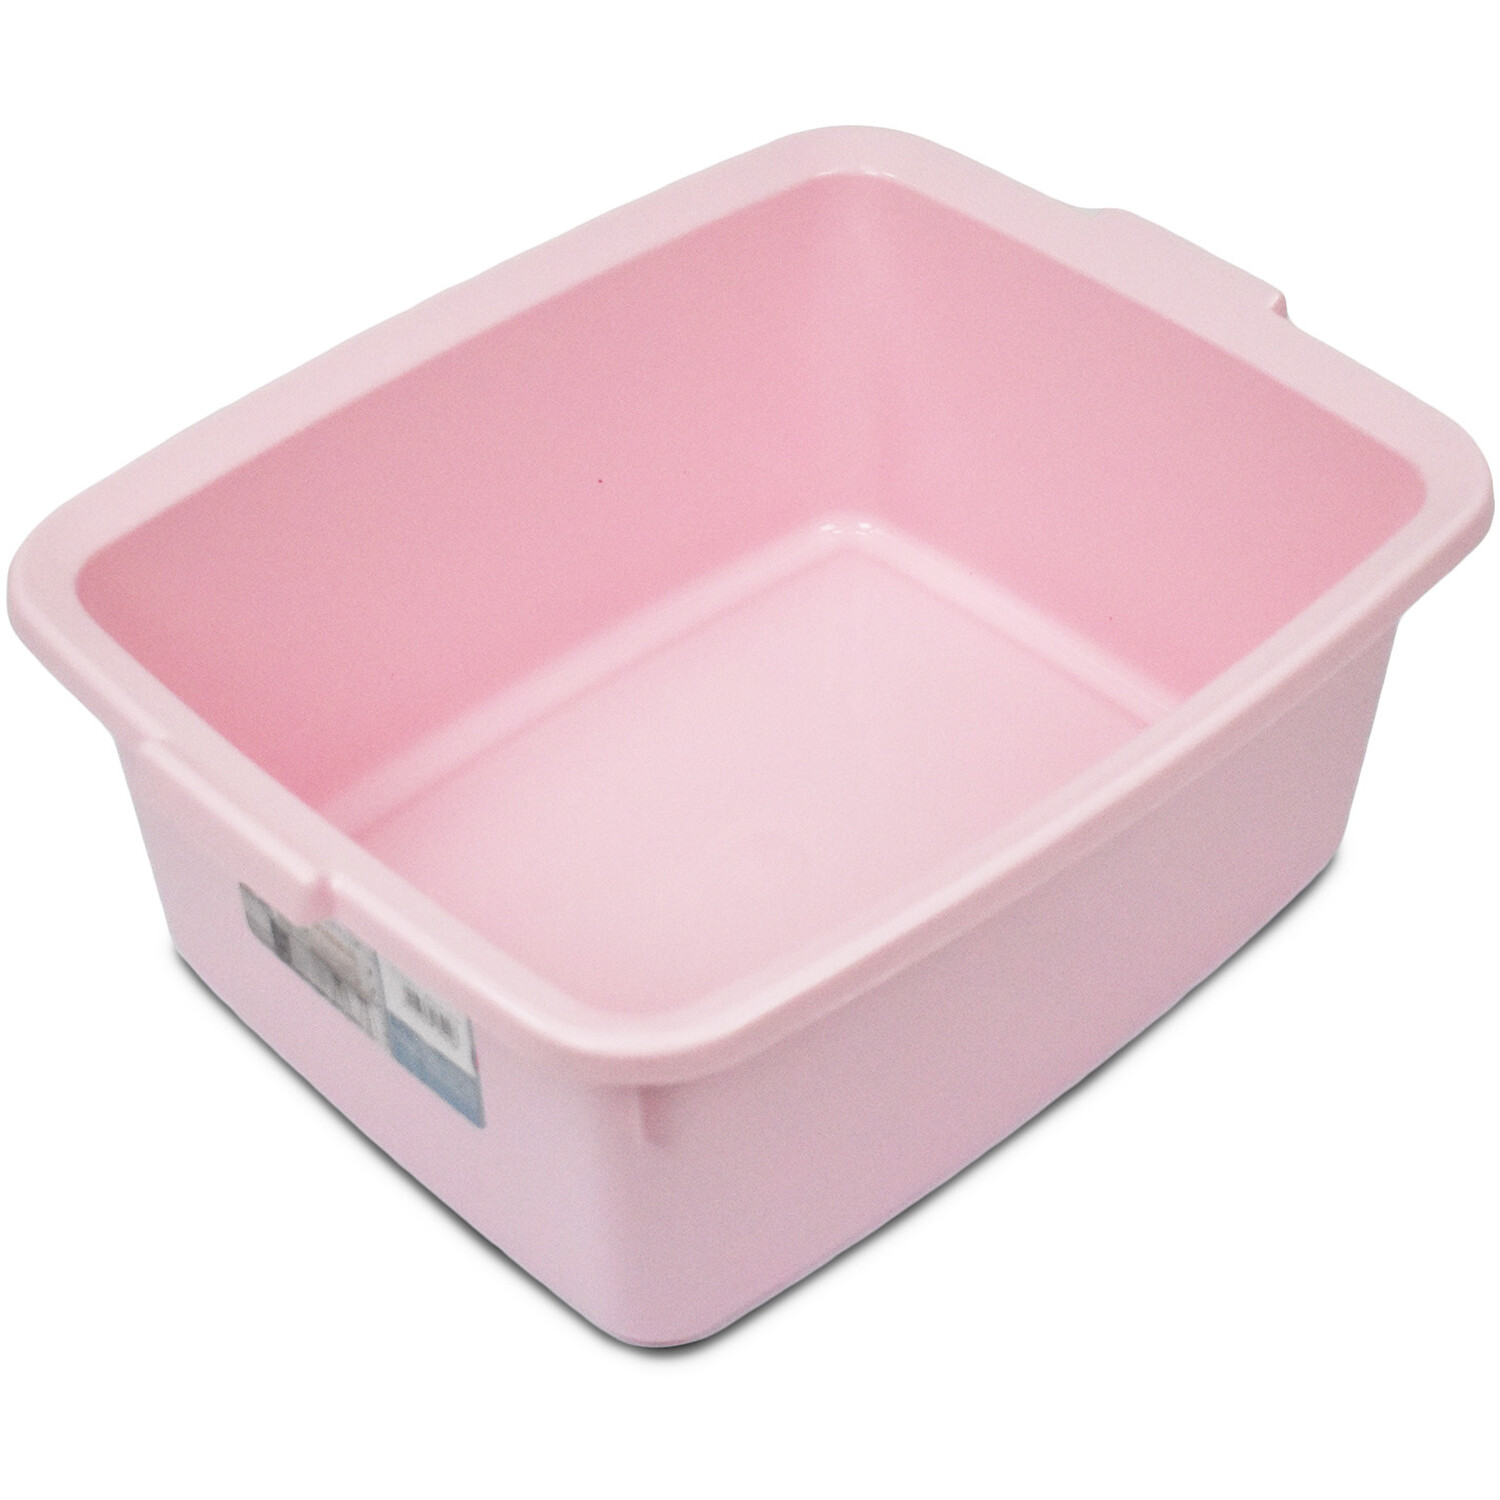 My Home Pink Rectangular Washing Up Bowl Image